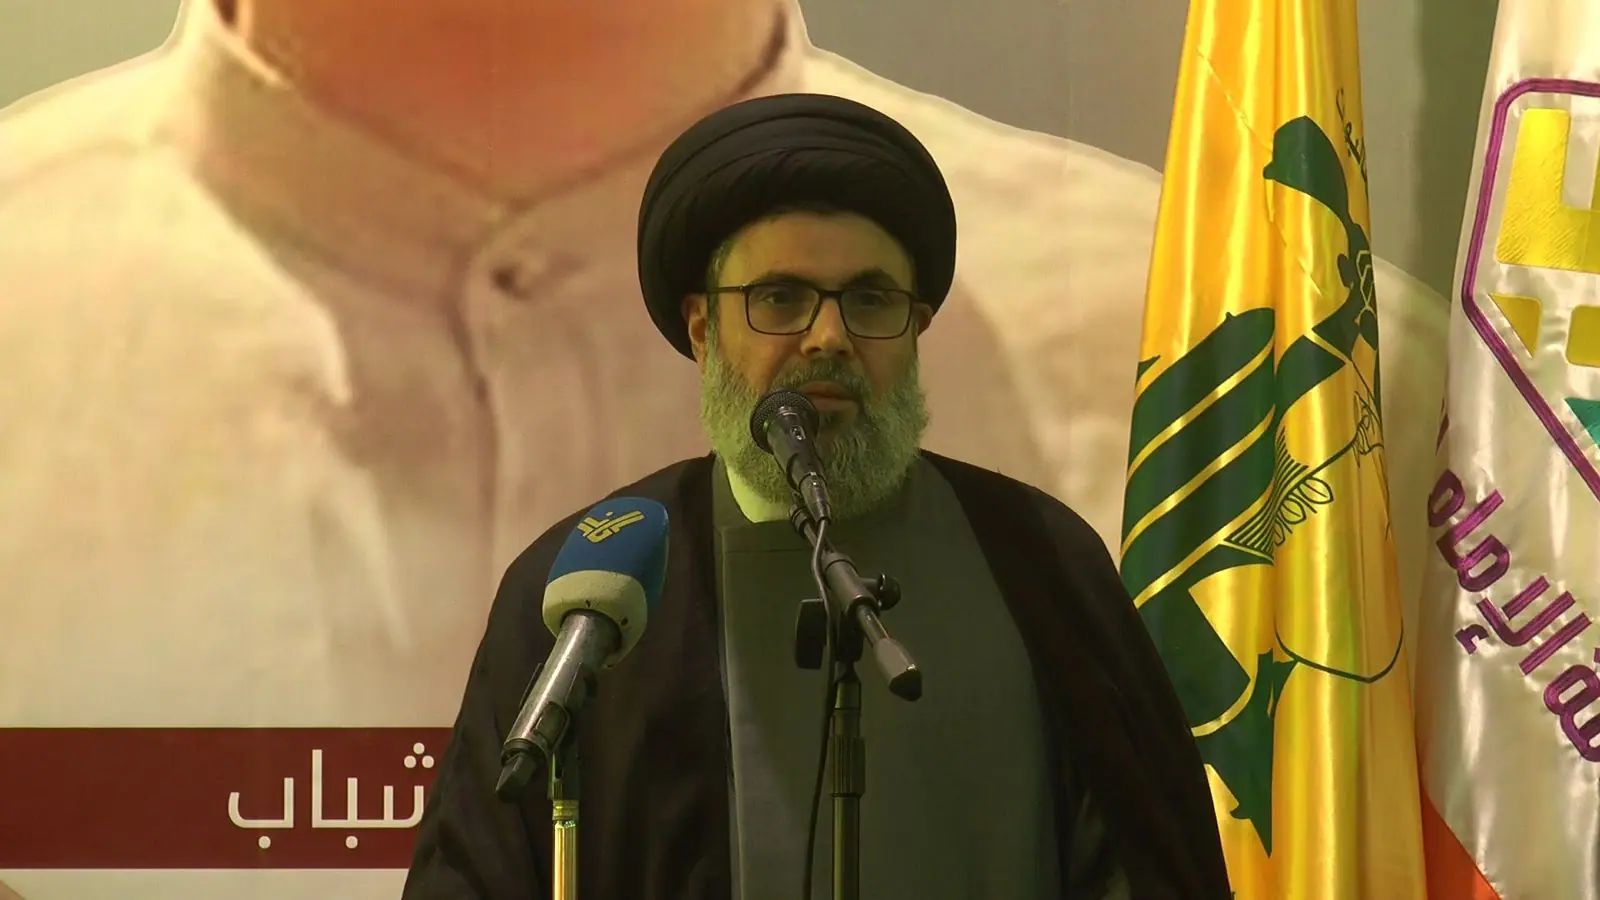 رئيس المجلس التنفيذي في حزب الله السيّد هاشم صفي الدين